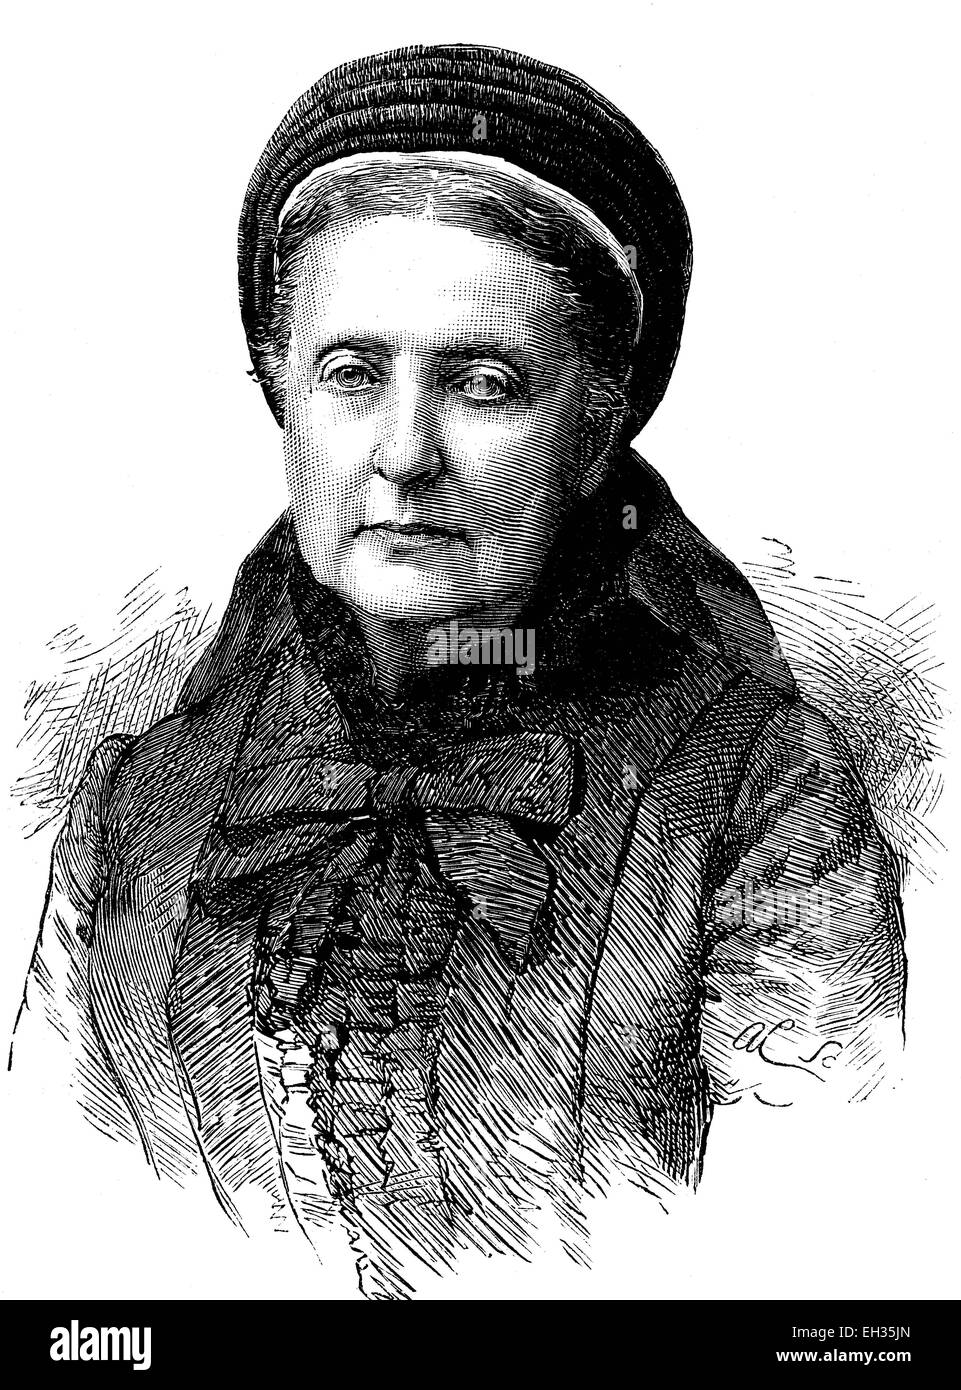 La princesa Clementina de Sajonia-coburgo, Clementina d'Orleans, 1817-1907, Princesa de Francia, xilografía, grabado histórico, 1880 Foto de stock